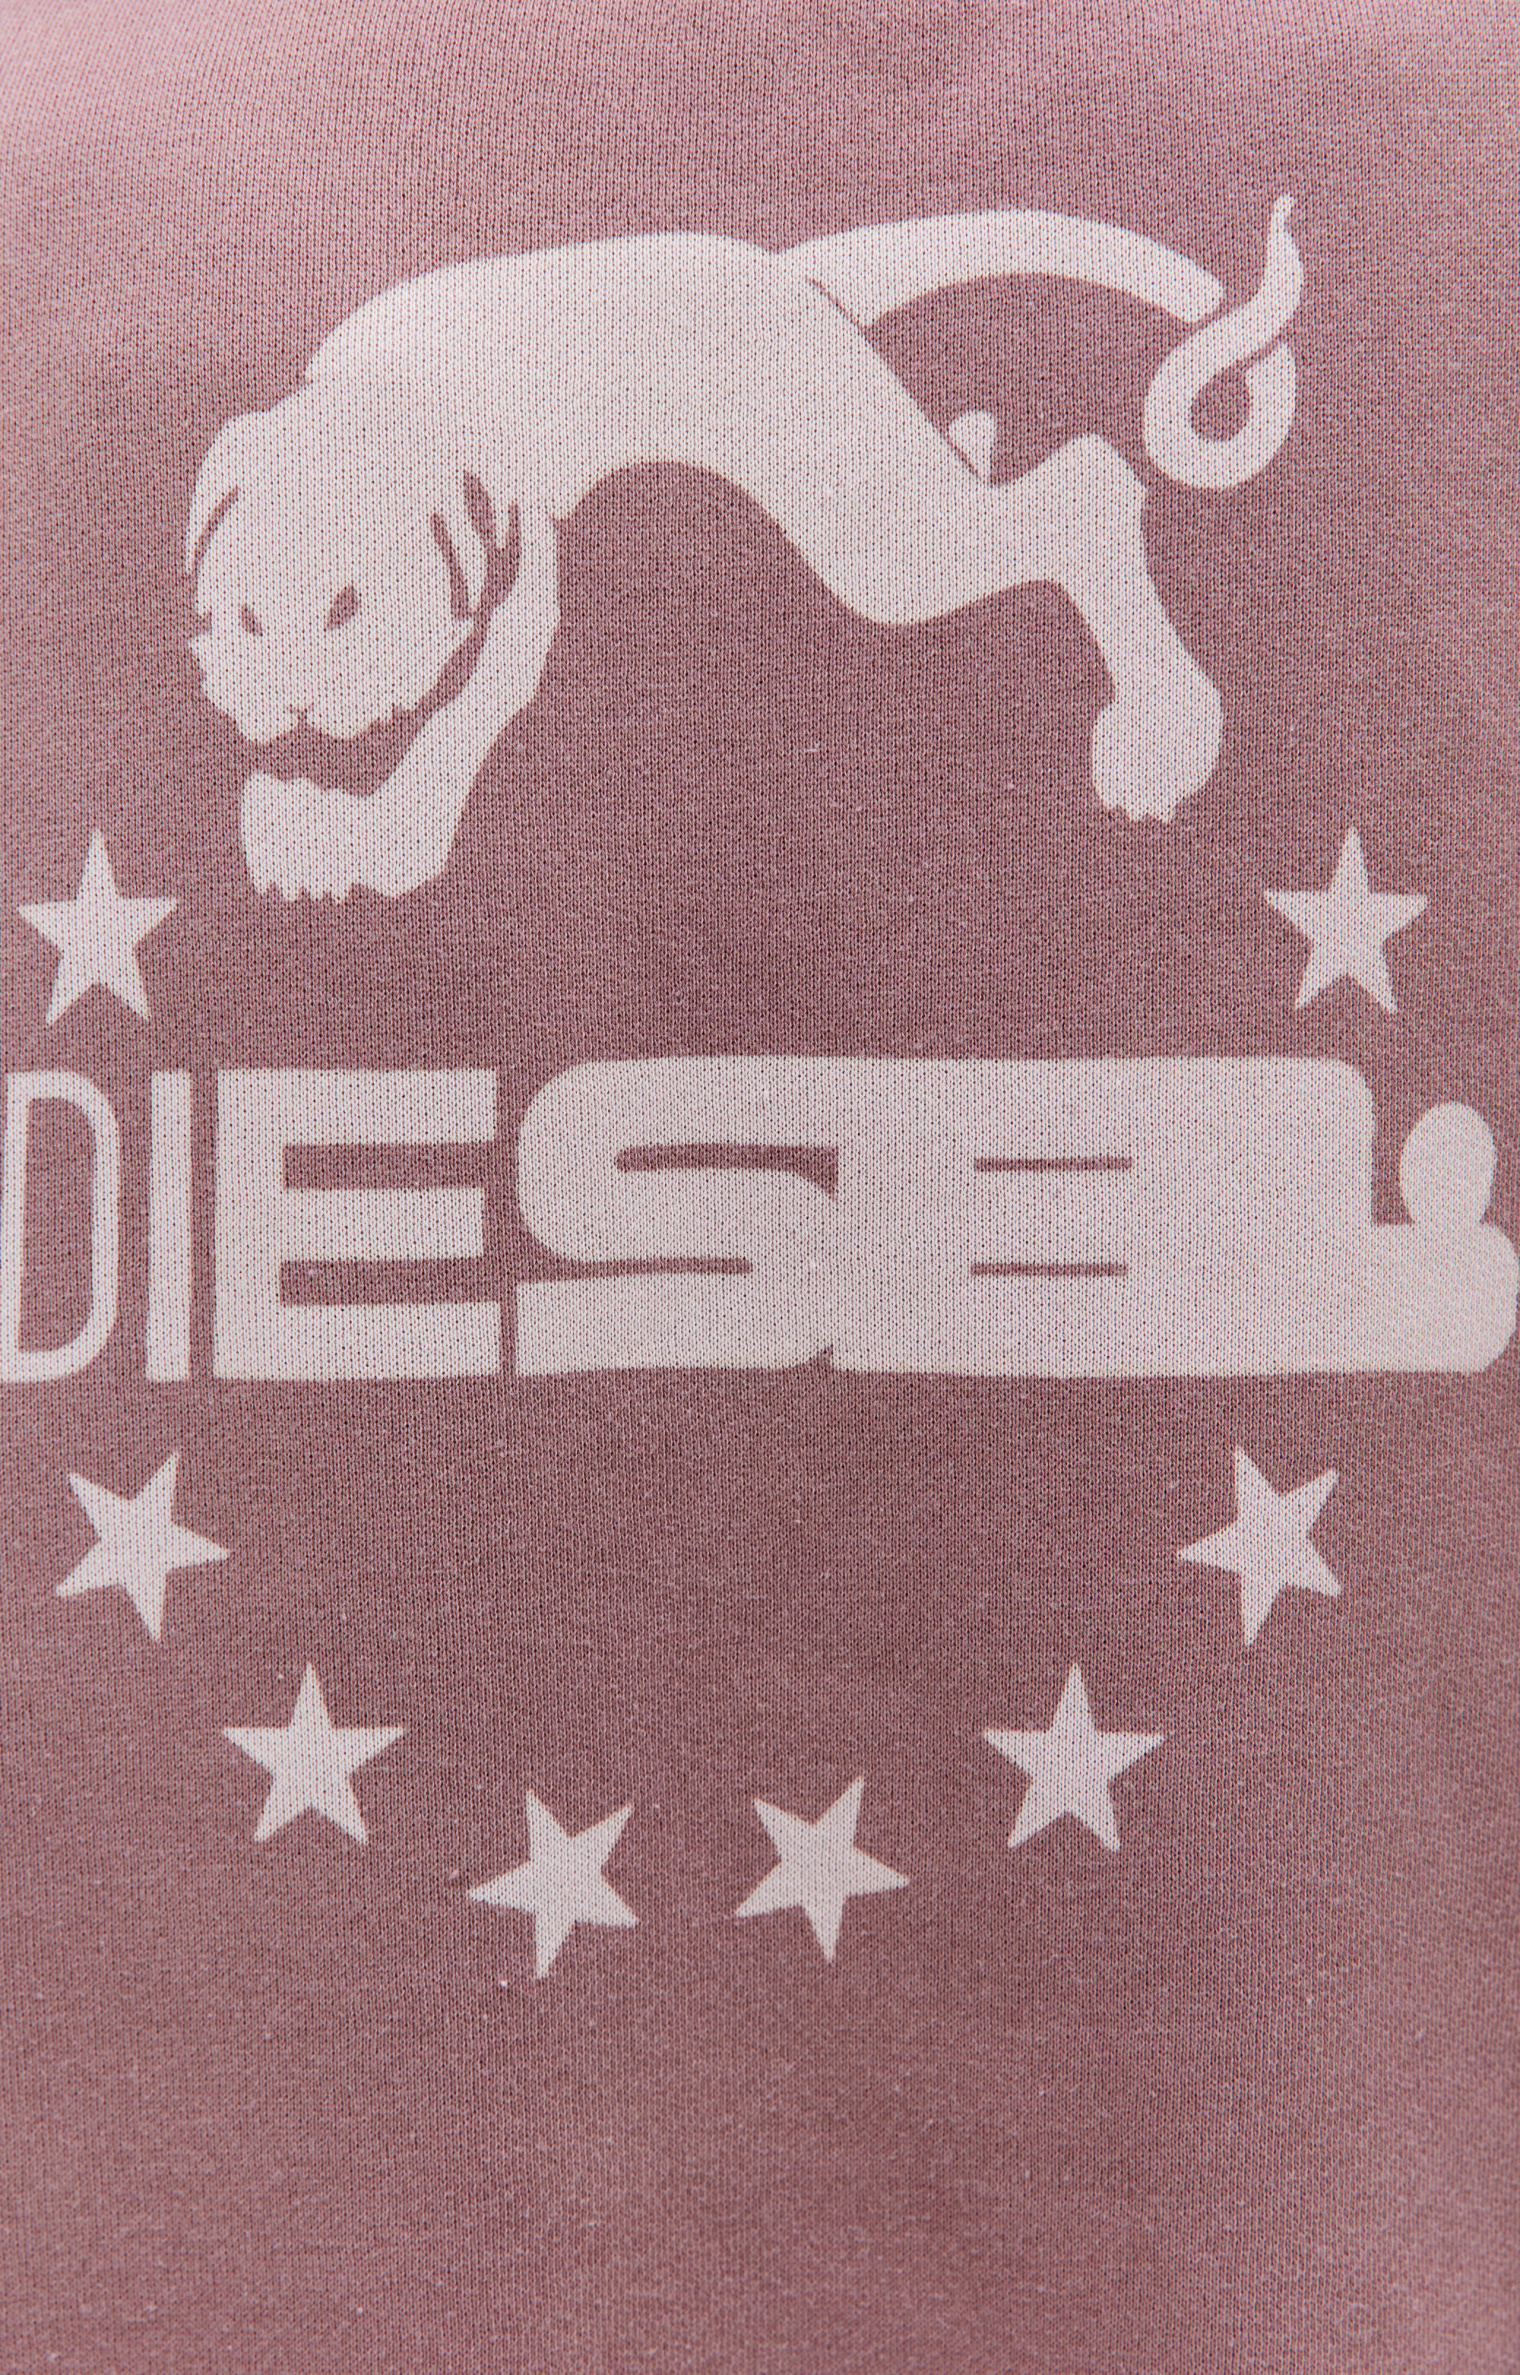 Diesel S-Macs sweatshirt with Diesel Panther logo